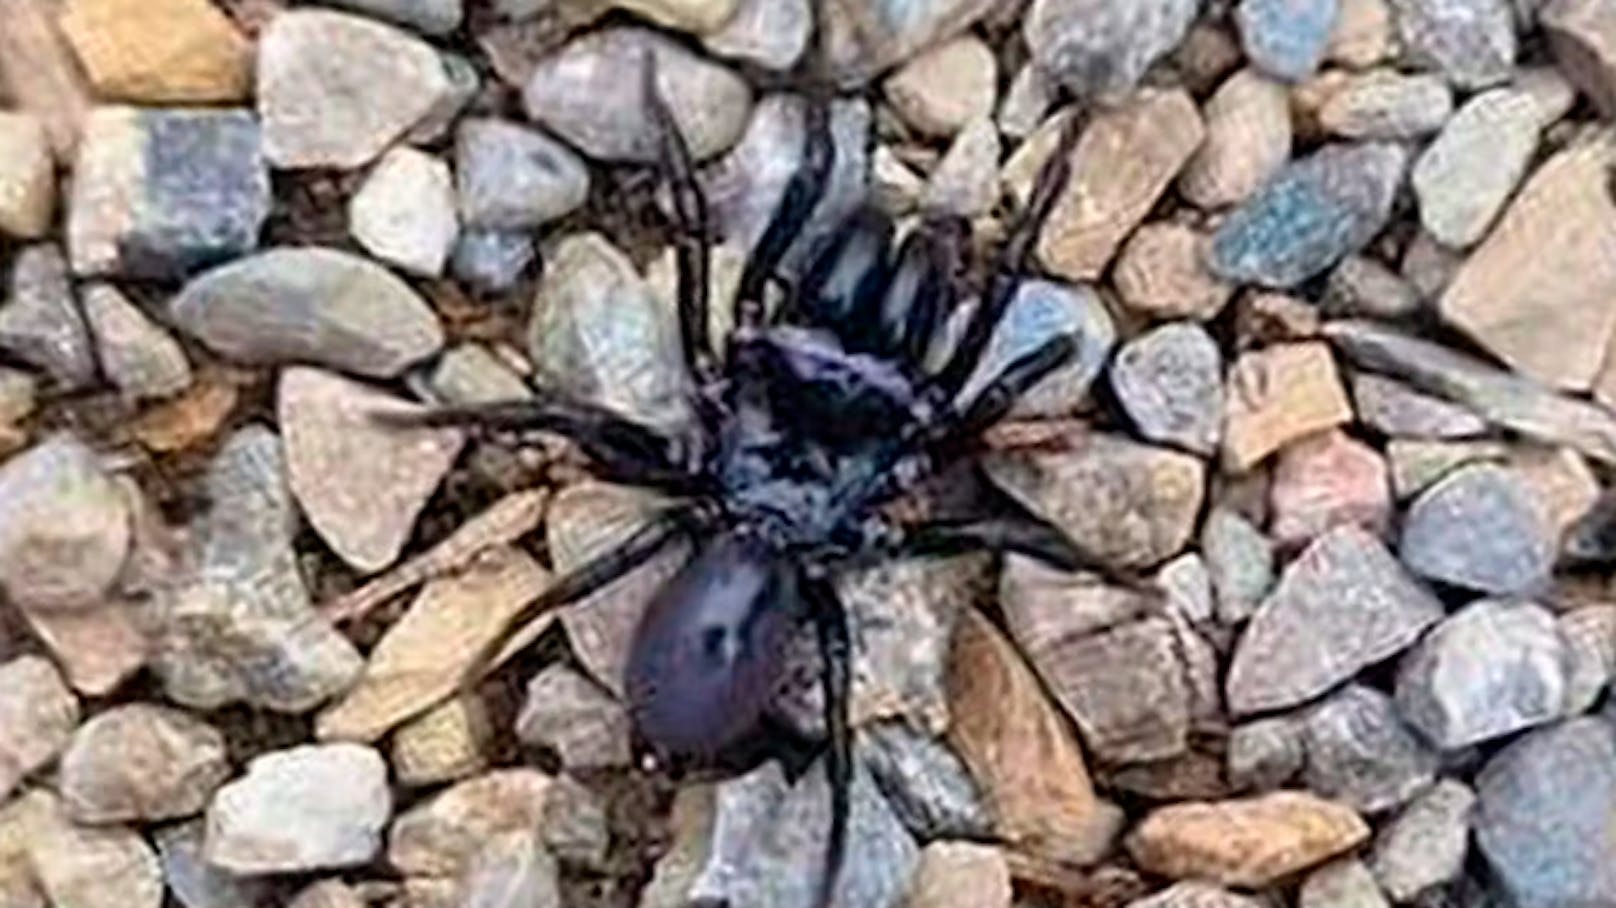 "Ich glaube, dass wir eine giftige Spinne gefunden haben", sagt ein Leserreporter zu "20 Minuten".